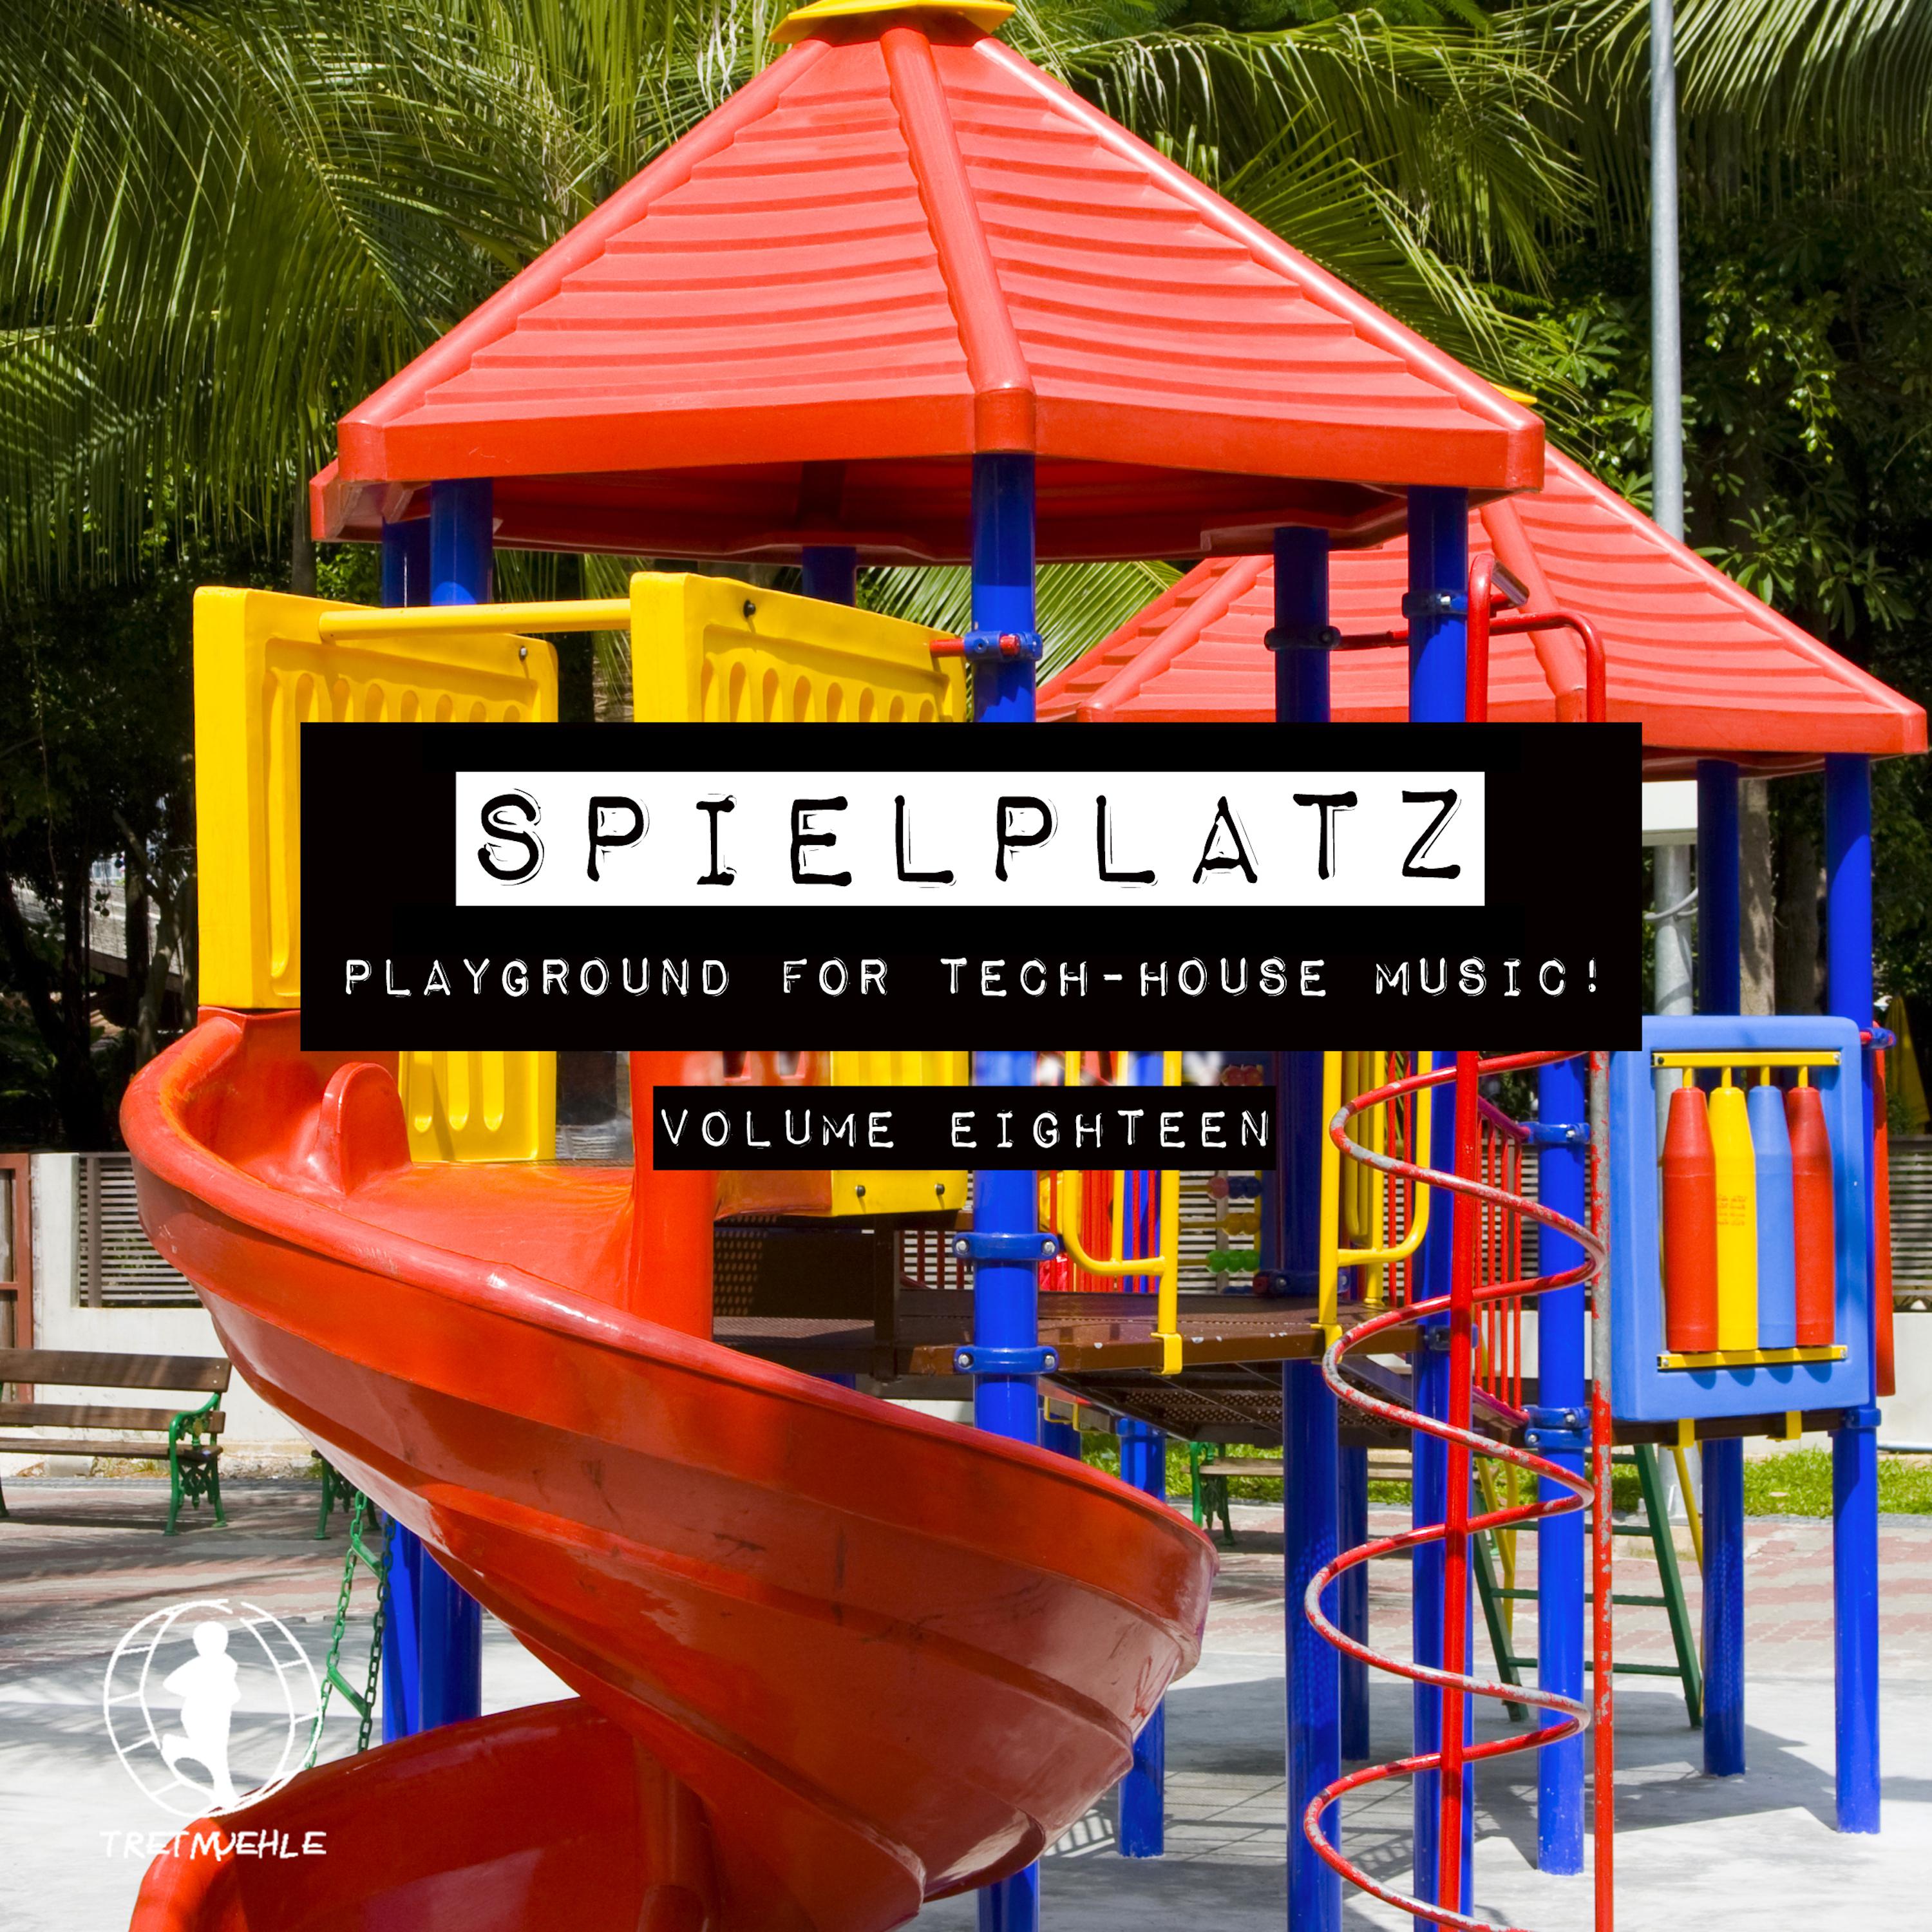 Spielplatz, Vol. 18 - Playground for Tech-House Music